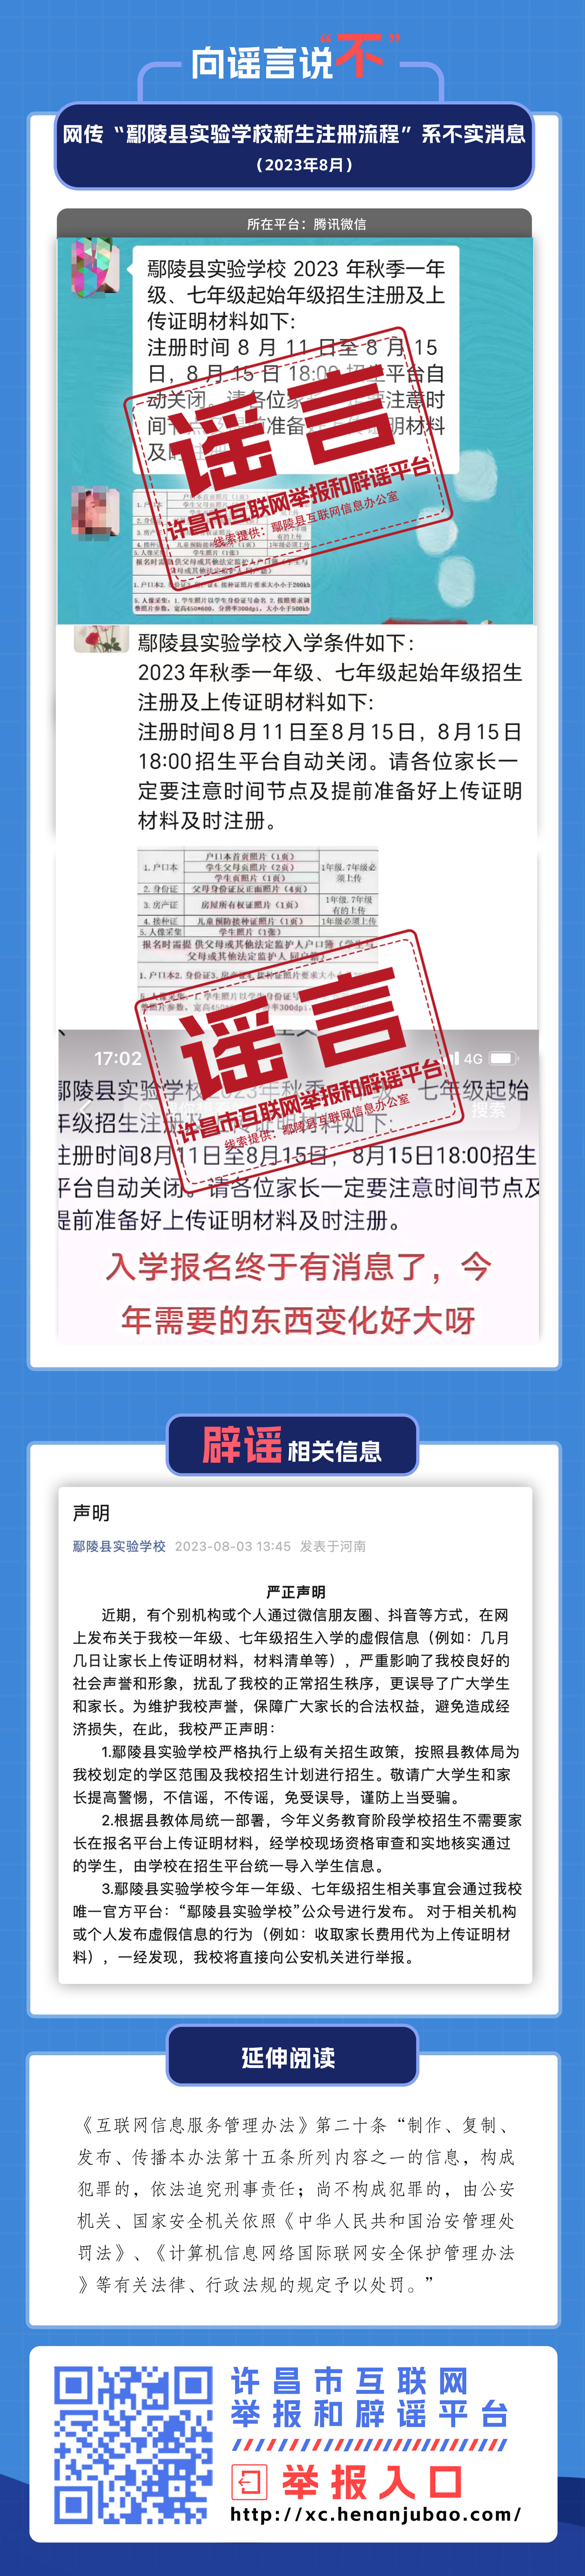 网传“鄢陵县实验学校新生注册流程”系不实信息